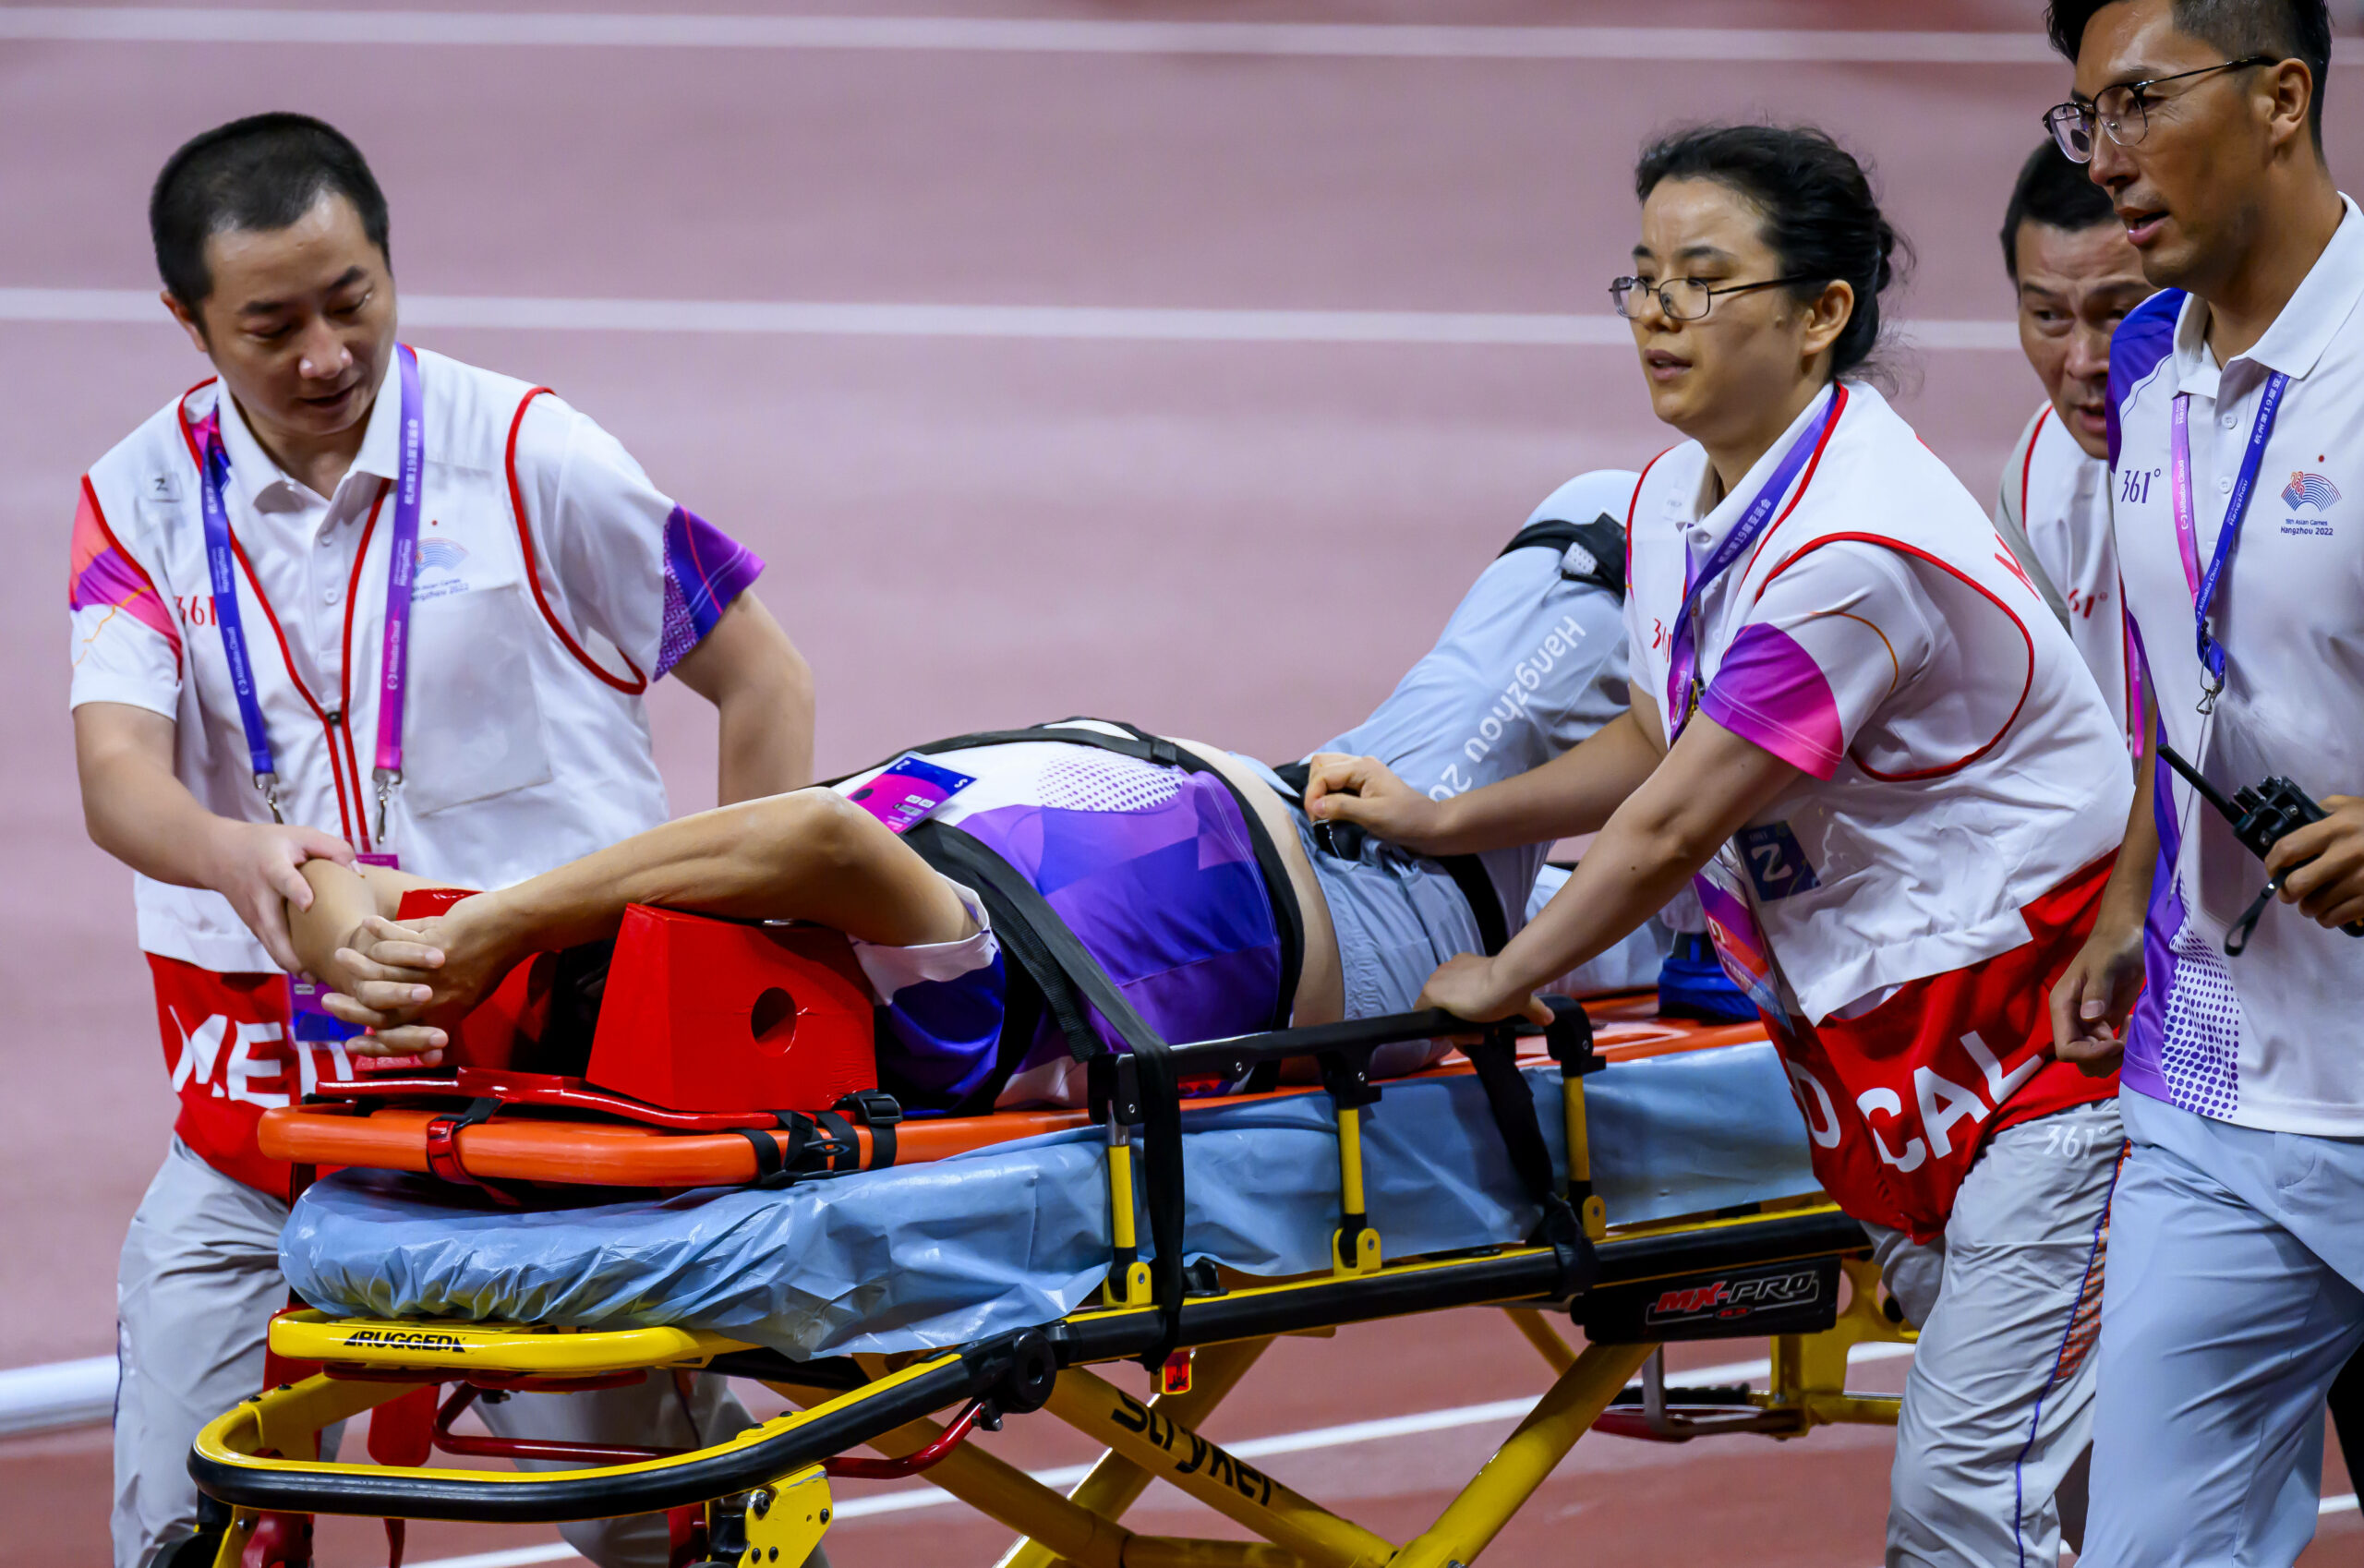 Offizieller wird nach Unfall bei den Asien-Spielen auf Trage transportiert